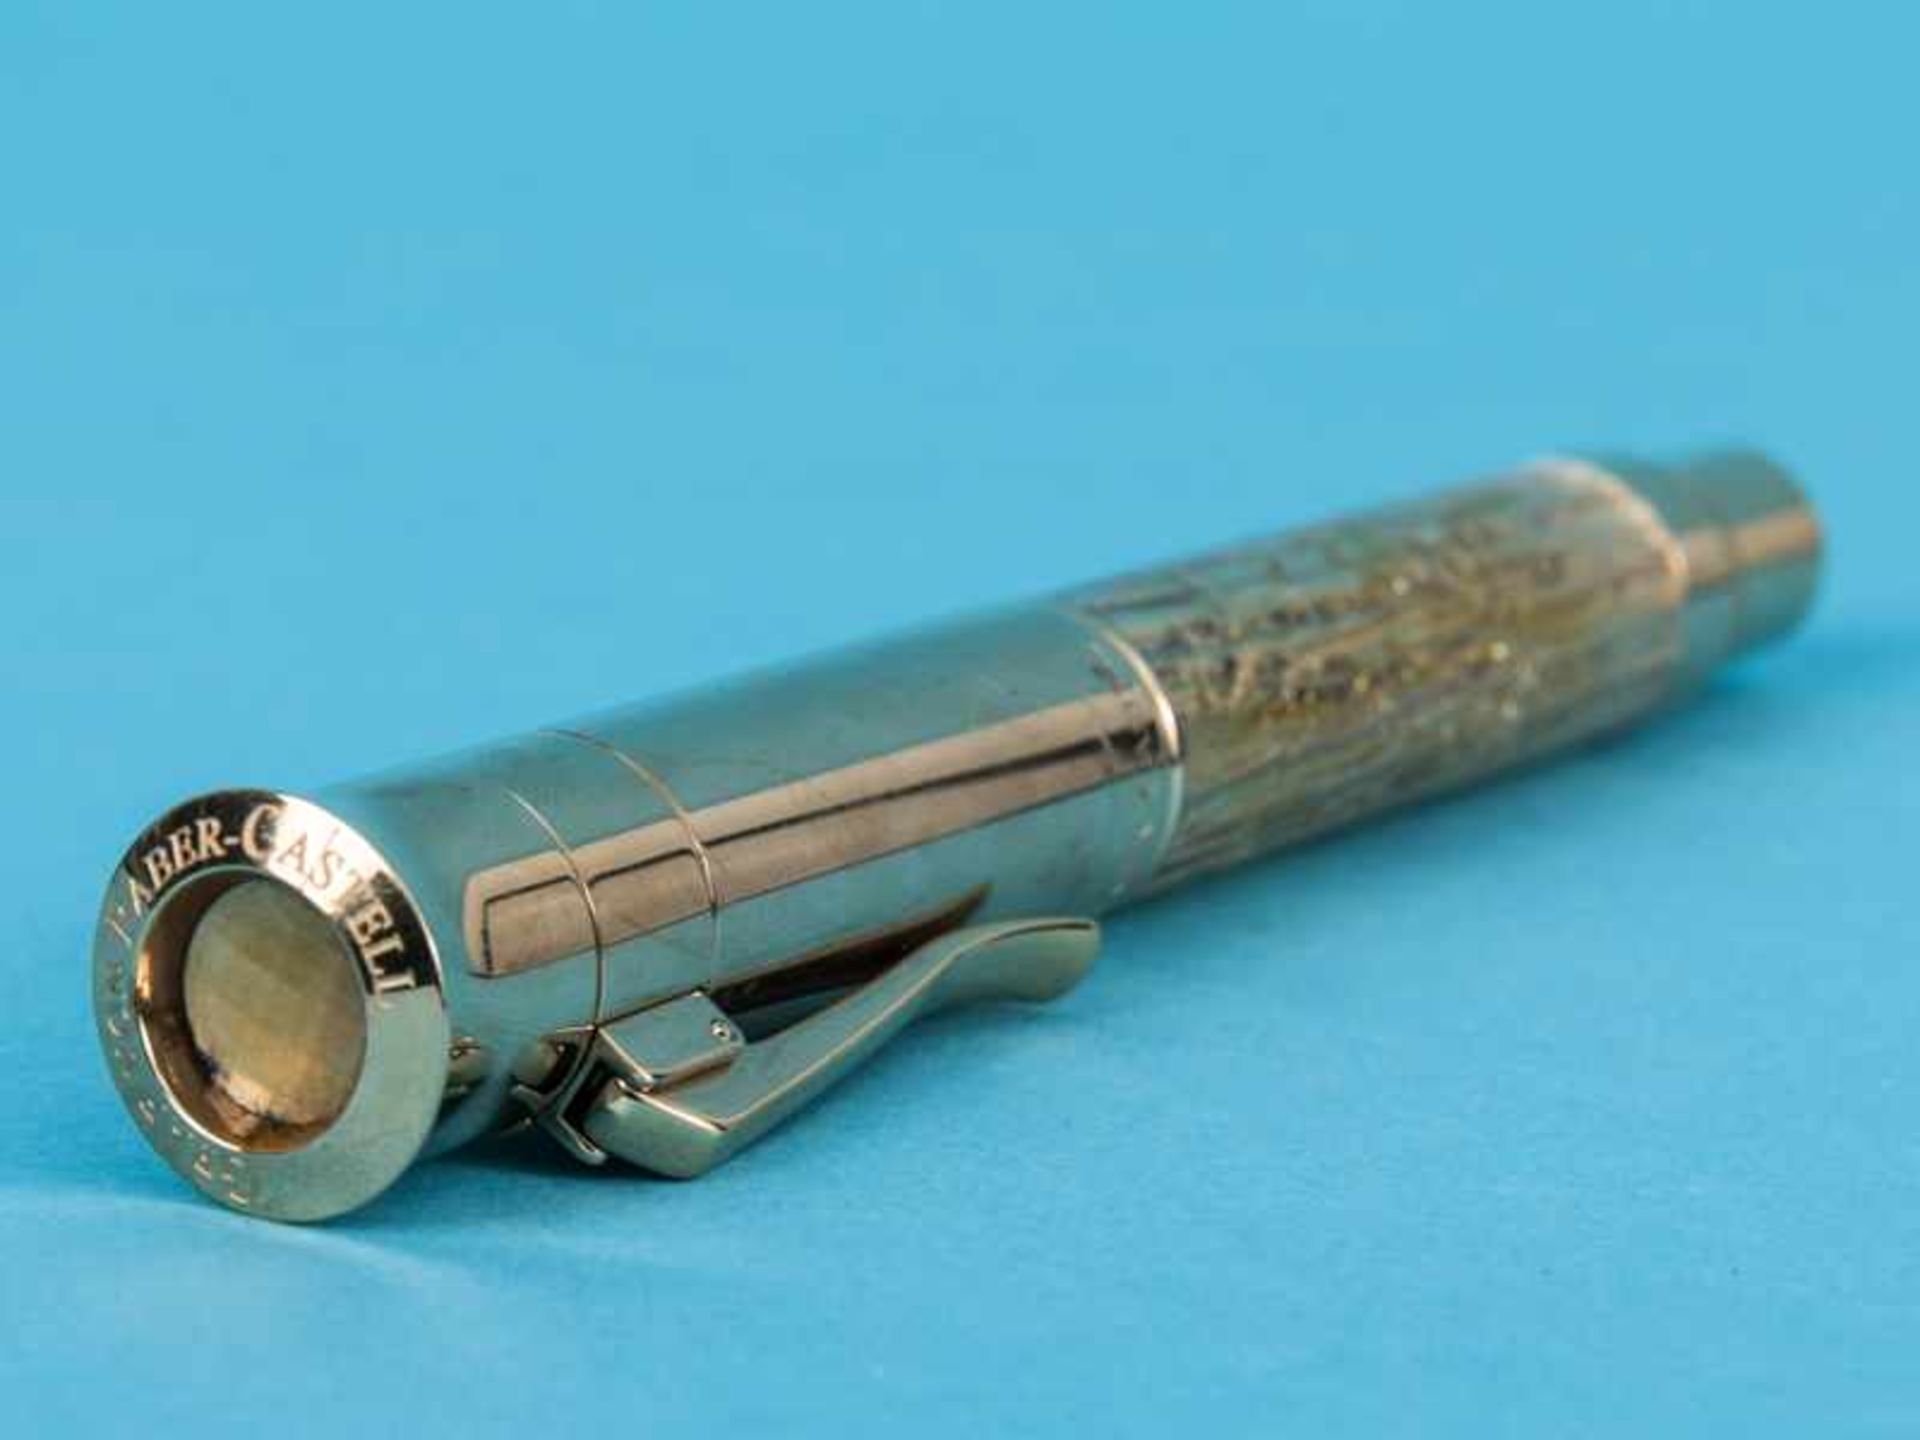 Kolben-Füllfederhalter "Pen of the Year" 2012, Handarbeit aus der Manufaktur Graf von Faber-Castell. - Image 7 of 10